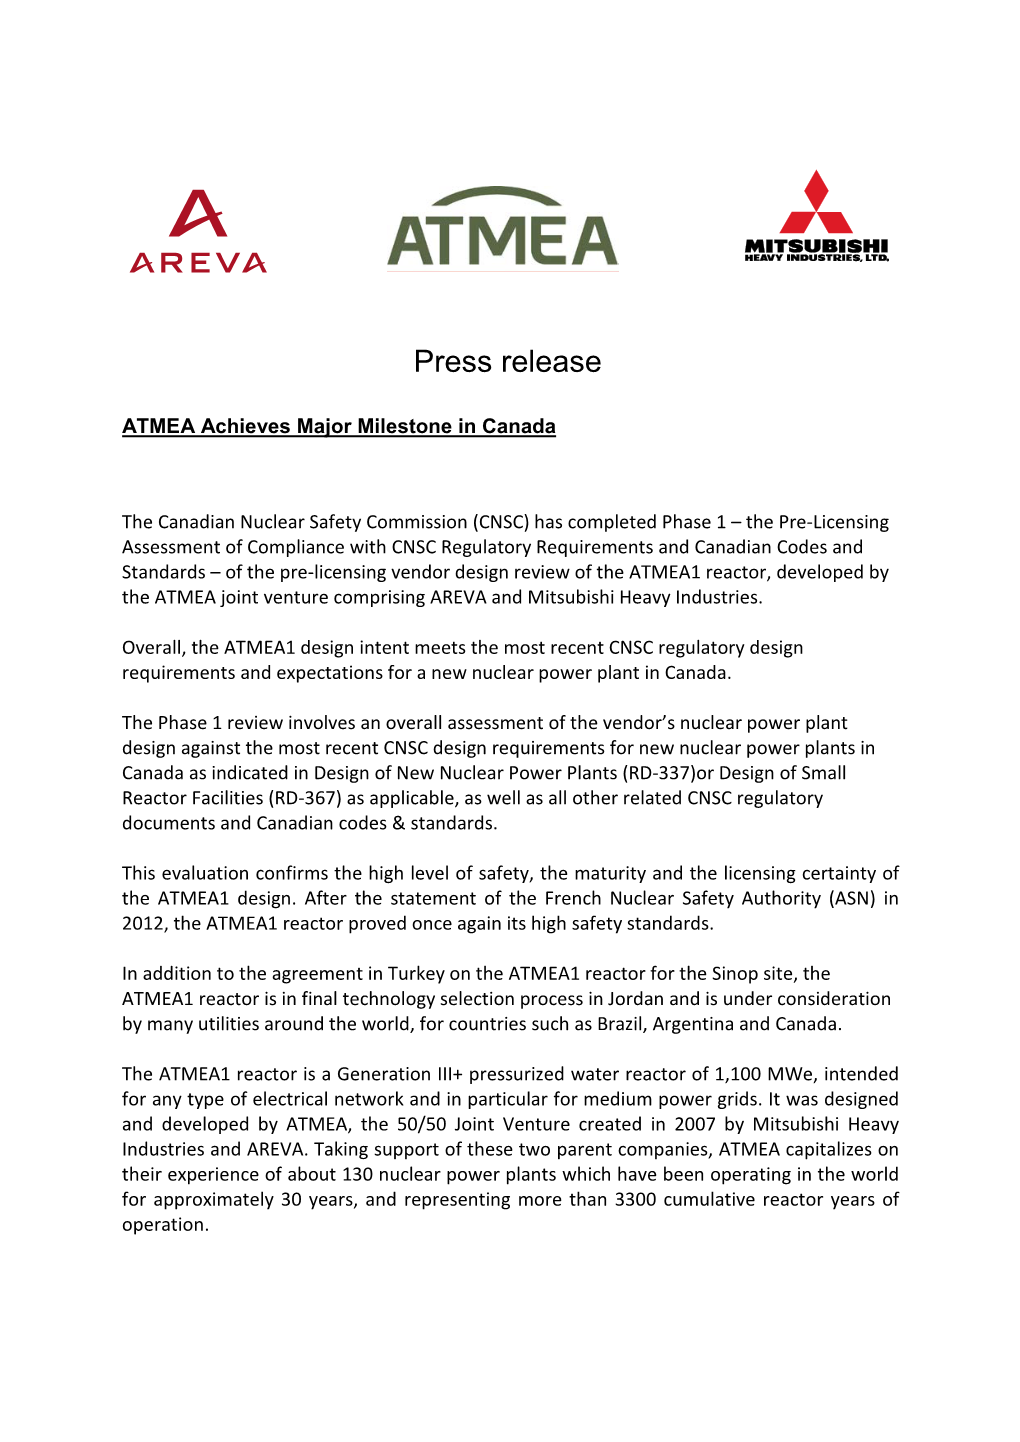 ATMEA Achieves Major Milestone in Canada